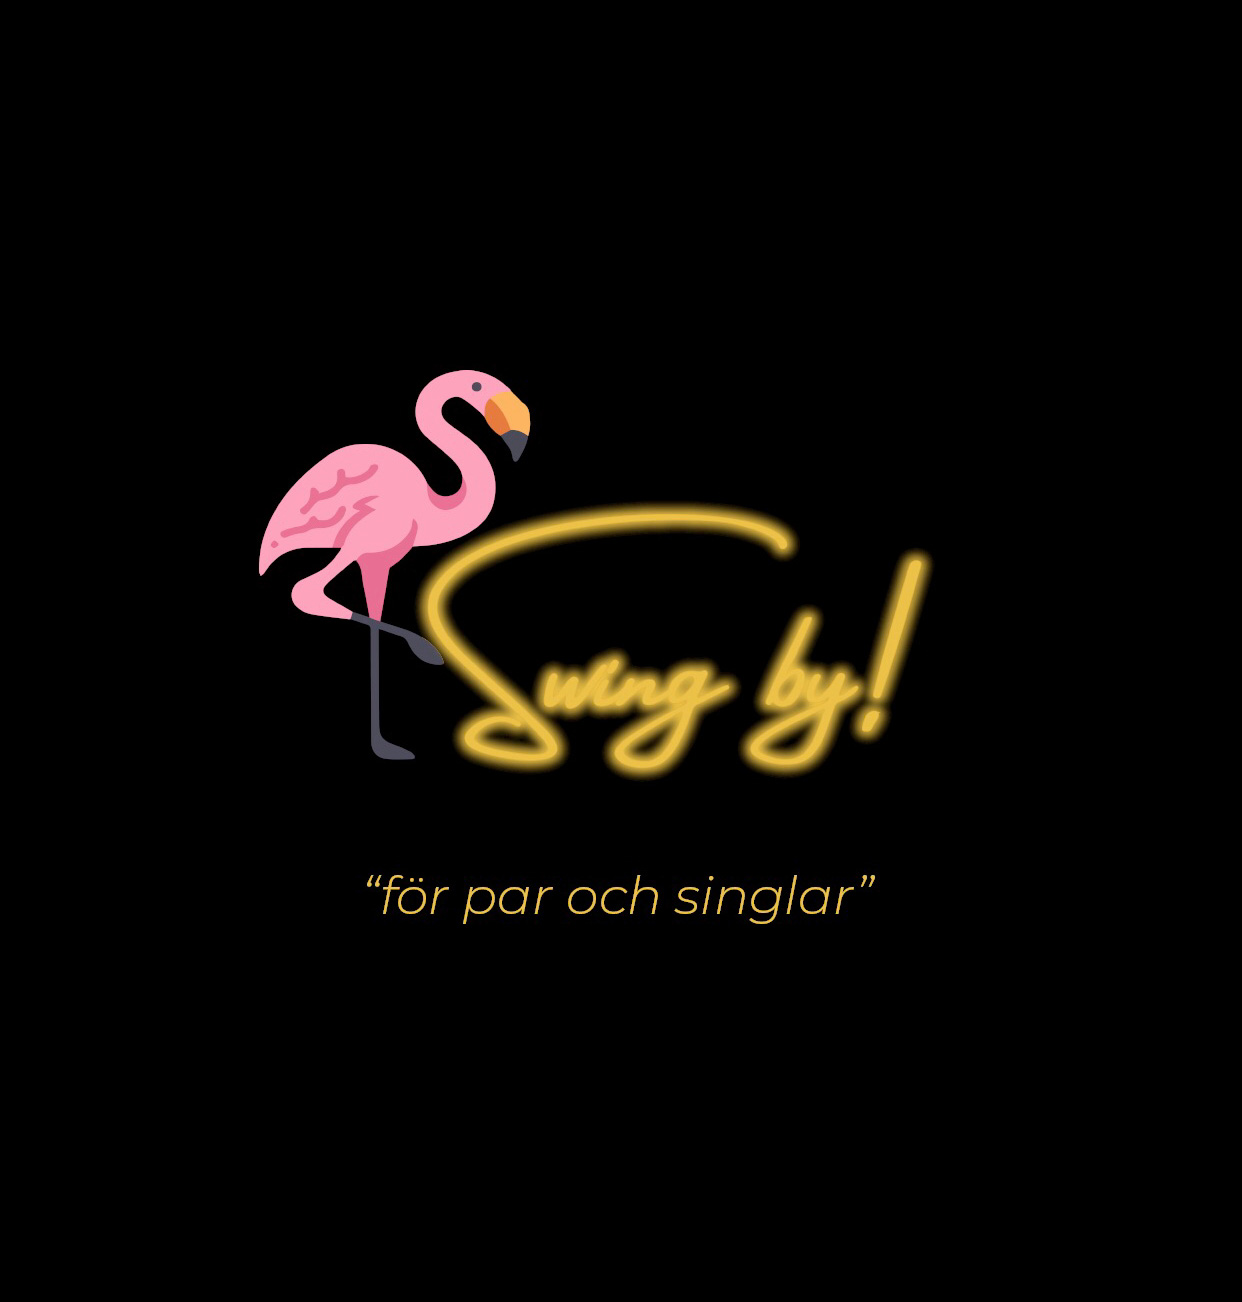 Swing by! - Sveriges första dejtingapp för Swingers, par och singlar!